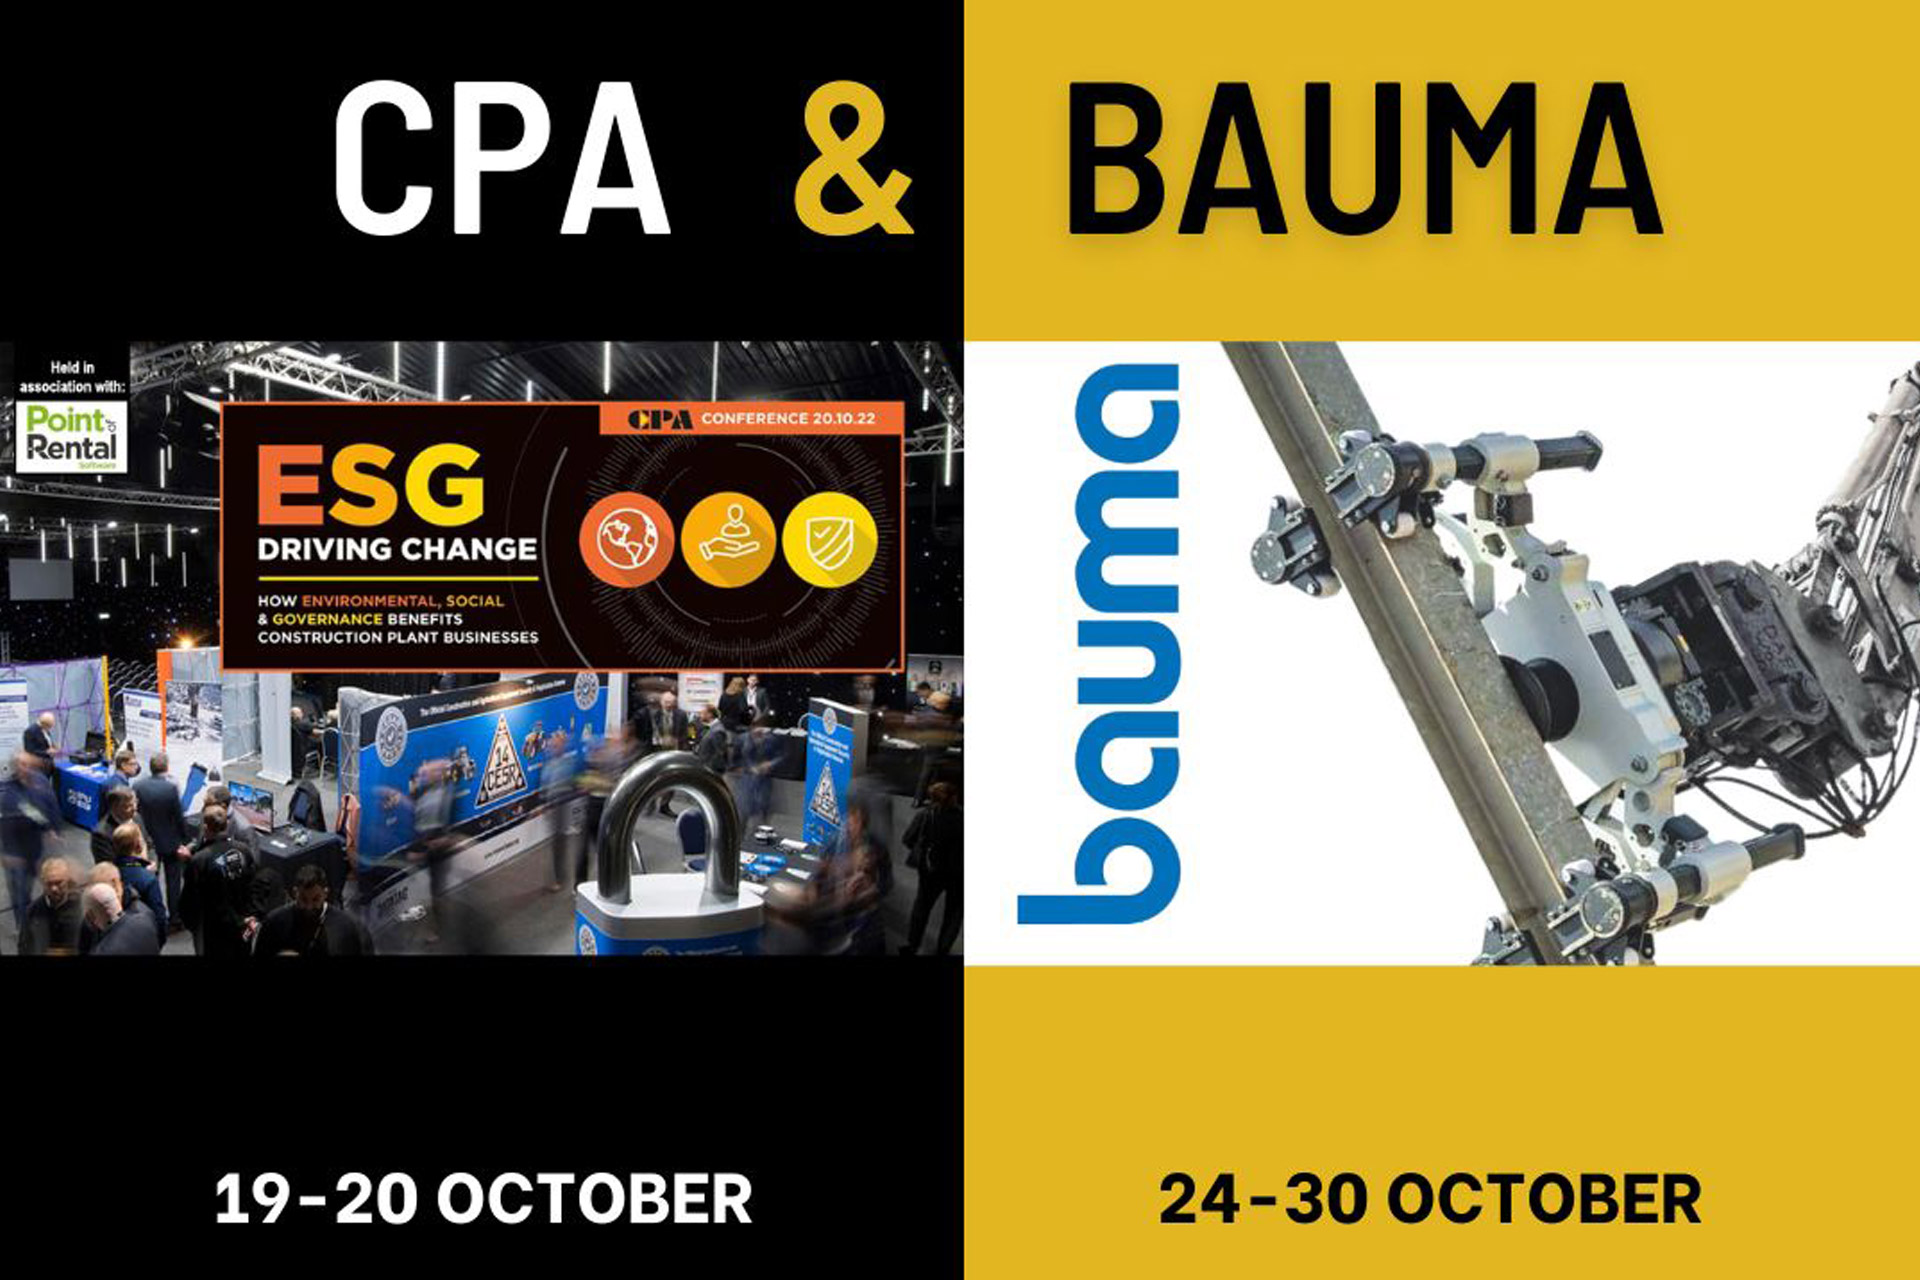 Bauma & CPA Show advertisement